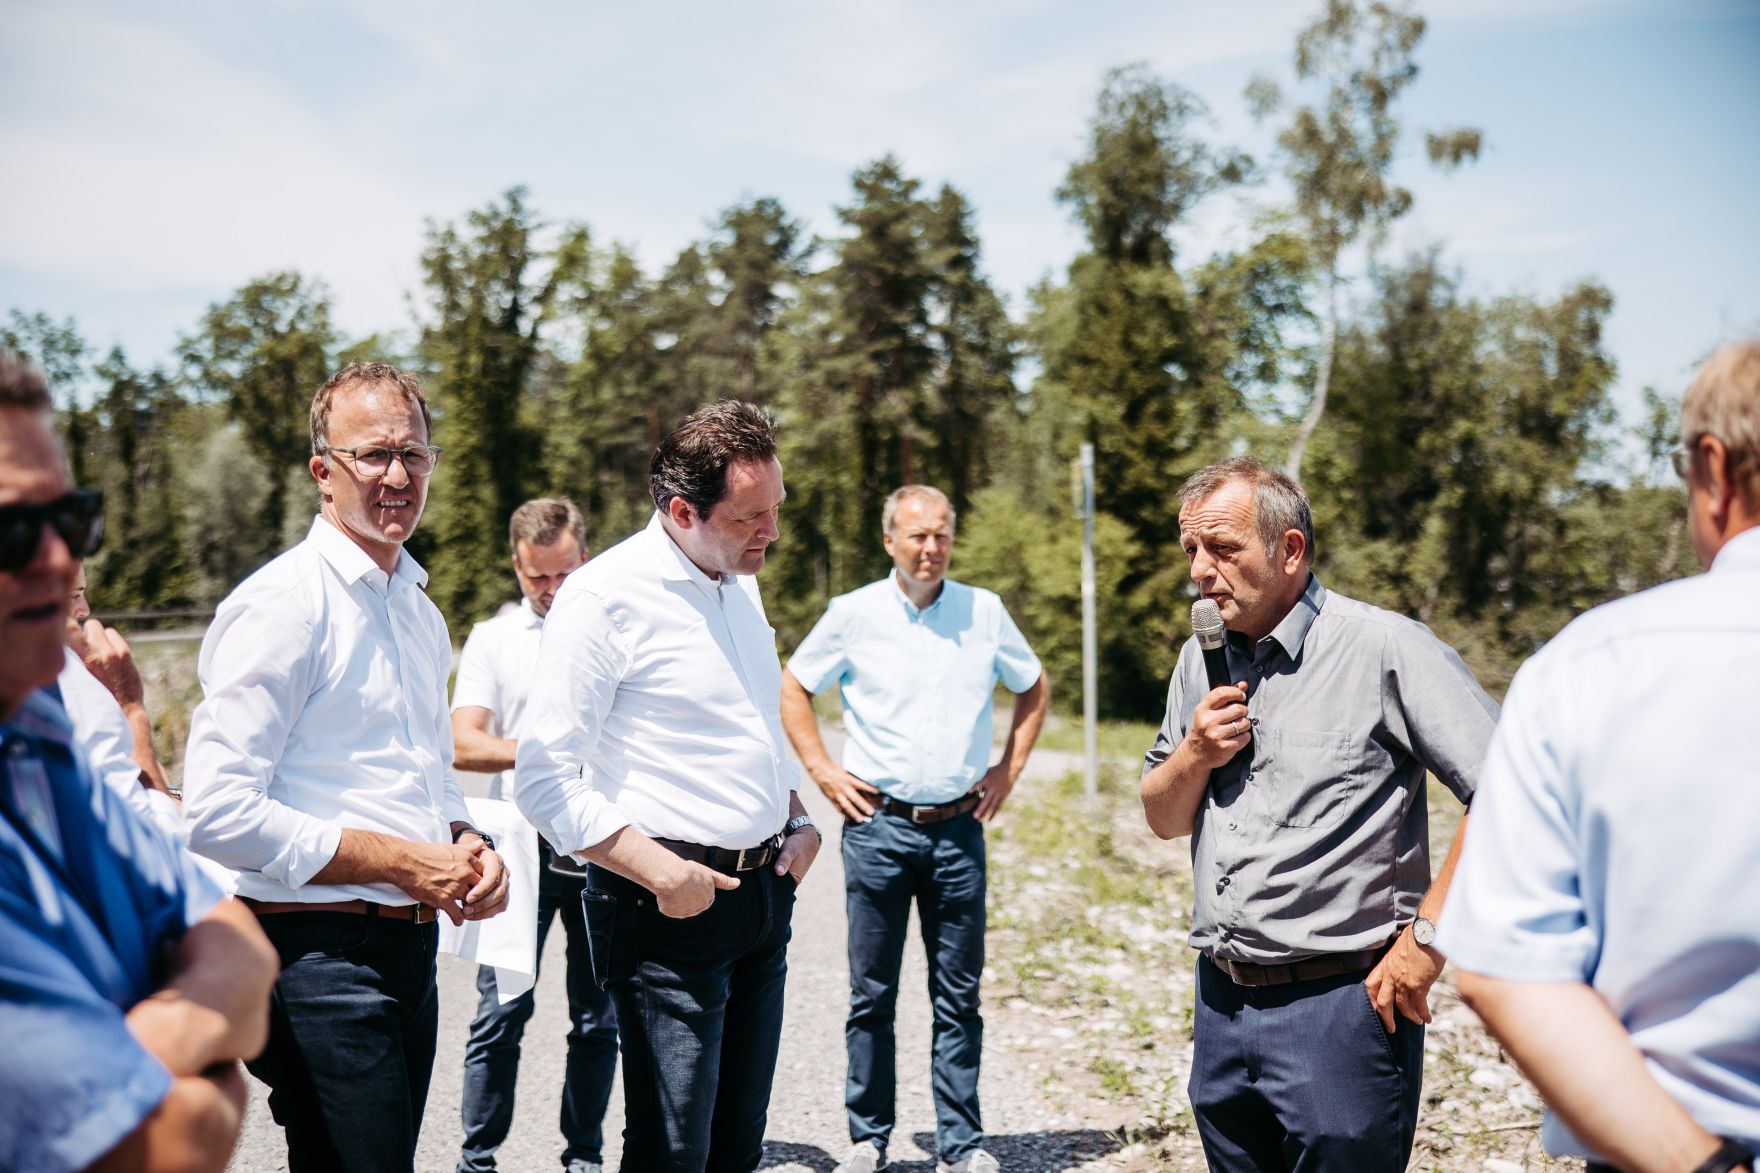 Lokalaugenschein mit Bundesminister Totschnig und dem Vorarlberger Landesrat Gantner beim Hochwasserschutzprojekt an der Bregenzerach.